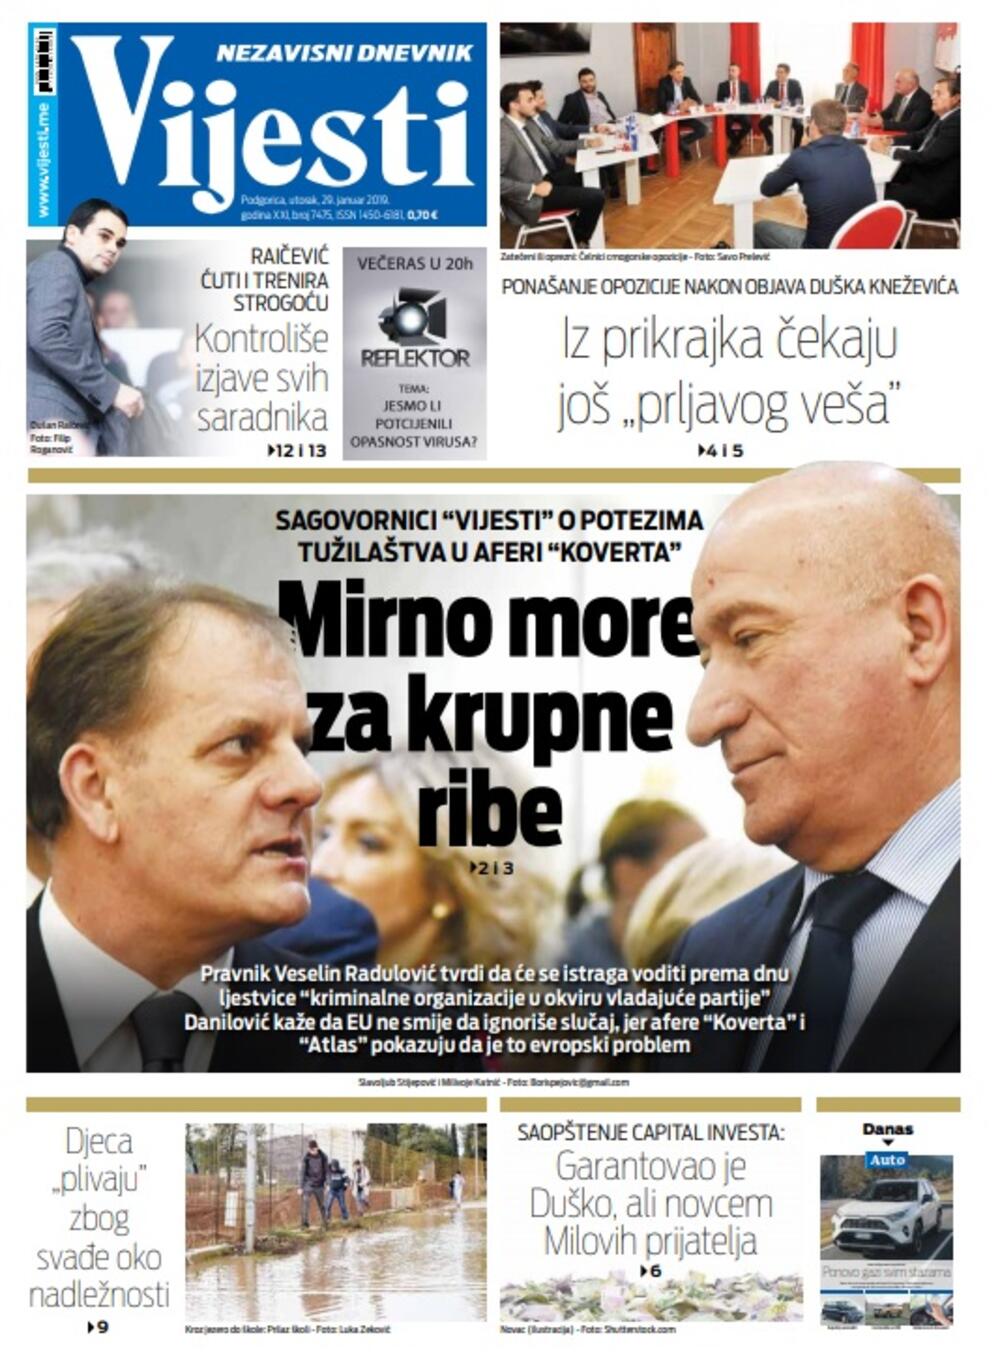 Naslovna strana Vijesti za 29. januar, Foto: Vijesti